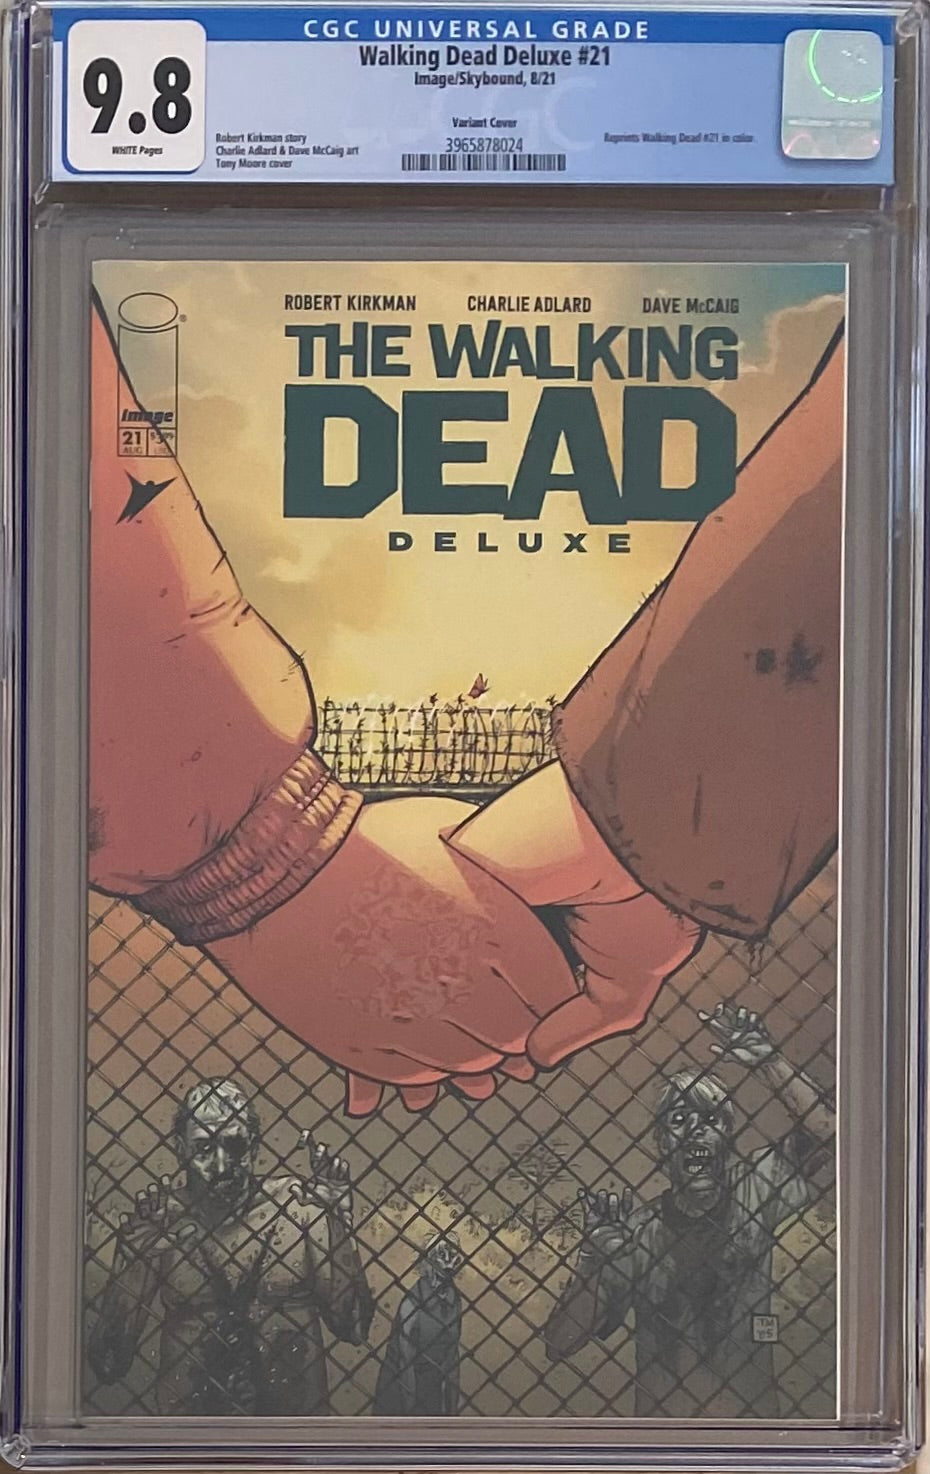 Walking Dead Deluxe #21 Variant CGC 9.8